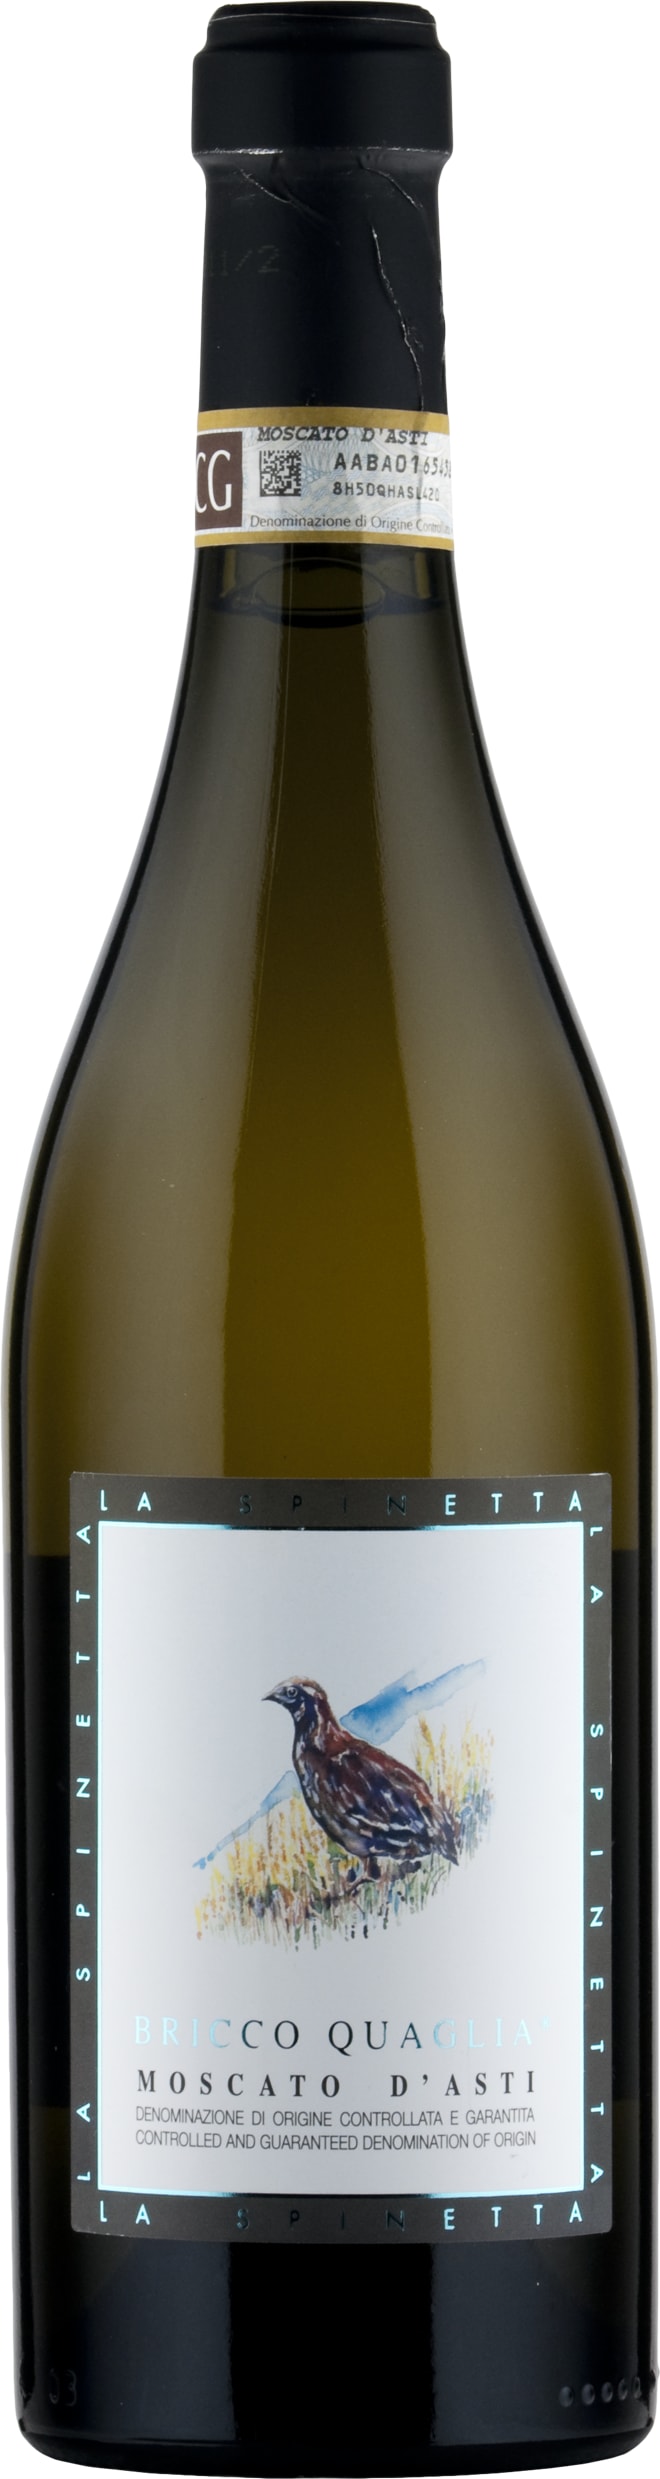 La Spinetta Moscato d'Asti Bricco Quaglia 2022 75cl - Buy La Spinetta Wines from GREAT WINES DIRECT wine shop